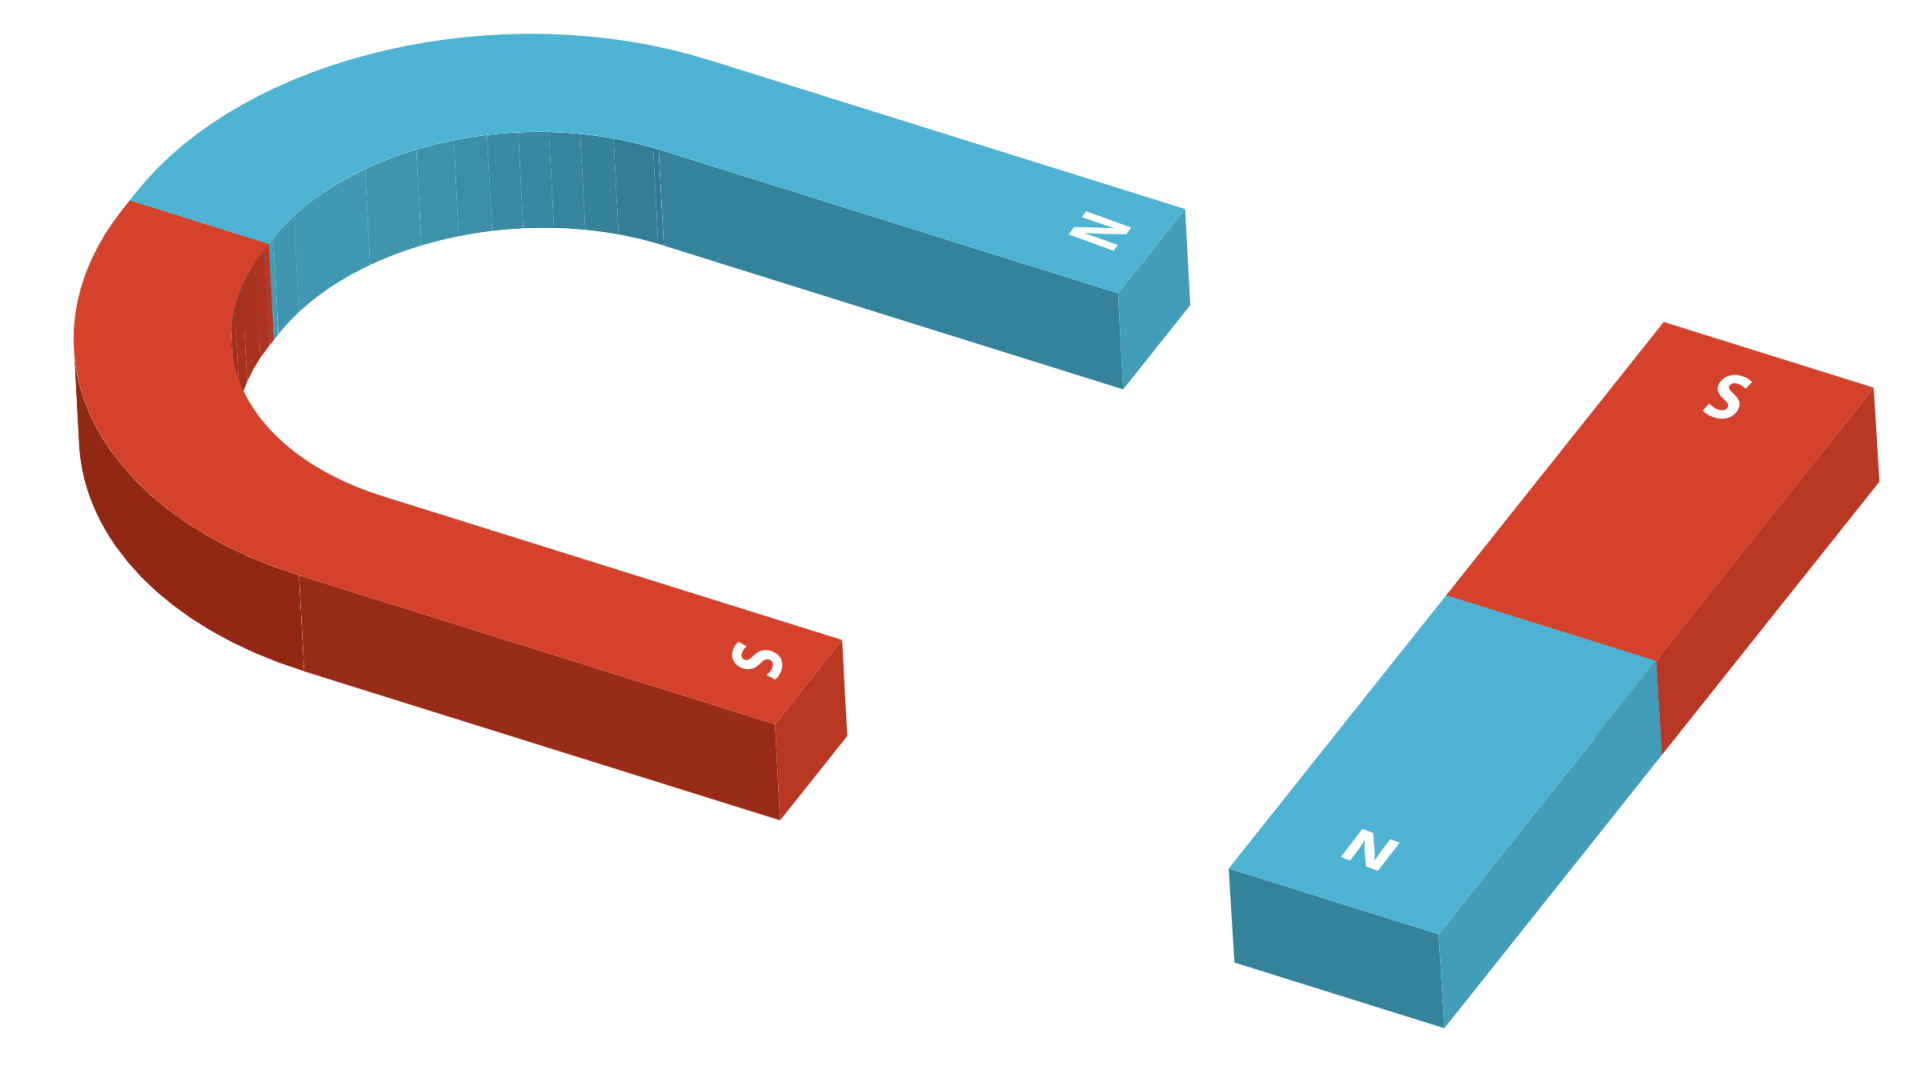 Ilustracja przedstawia dwa magnesy. Jeden ma kształt podkowy. Drugi ma kształt prostopadłościanu. Na obu oznaczono bieguny. Jedna połowa pierwszego magnesu ma kolor niebieski. Oznaczona została literą N. Druga połowa ma kolor czerwony. Oznaczona literą S. W drugim magnesie jedna połowa ma kolor niebieski i oznaczenie N. Druga połowa ma kolor czerwony i oznaczenie S.